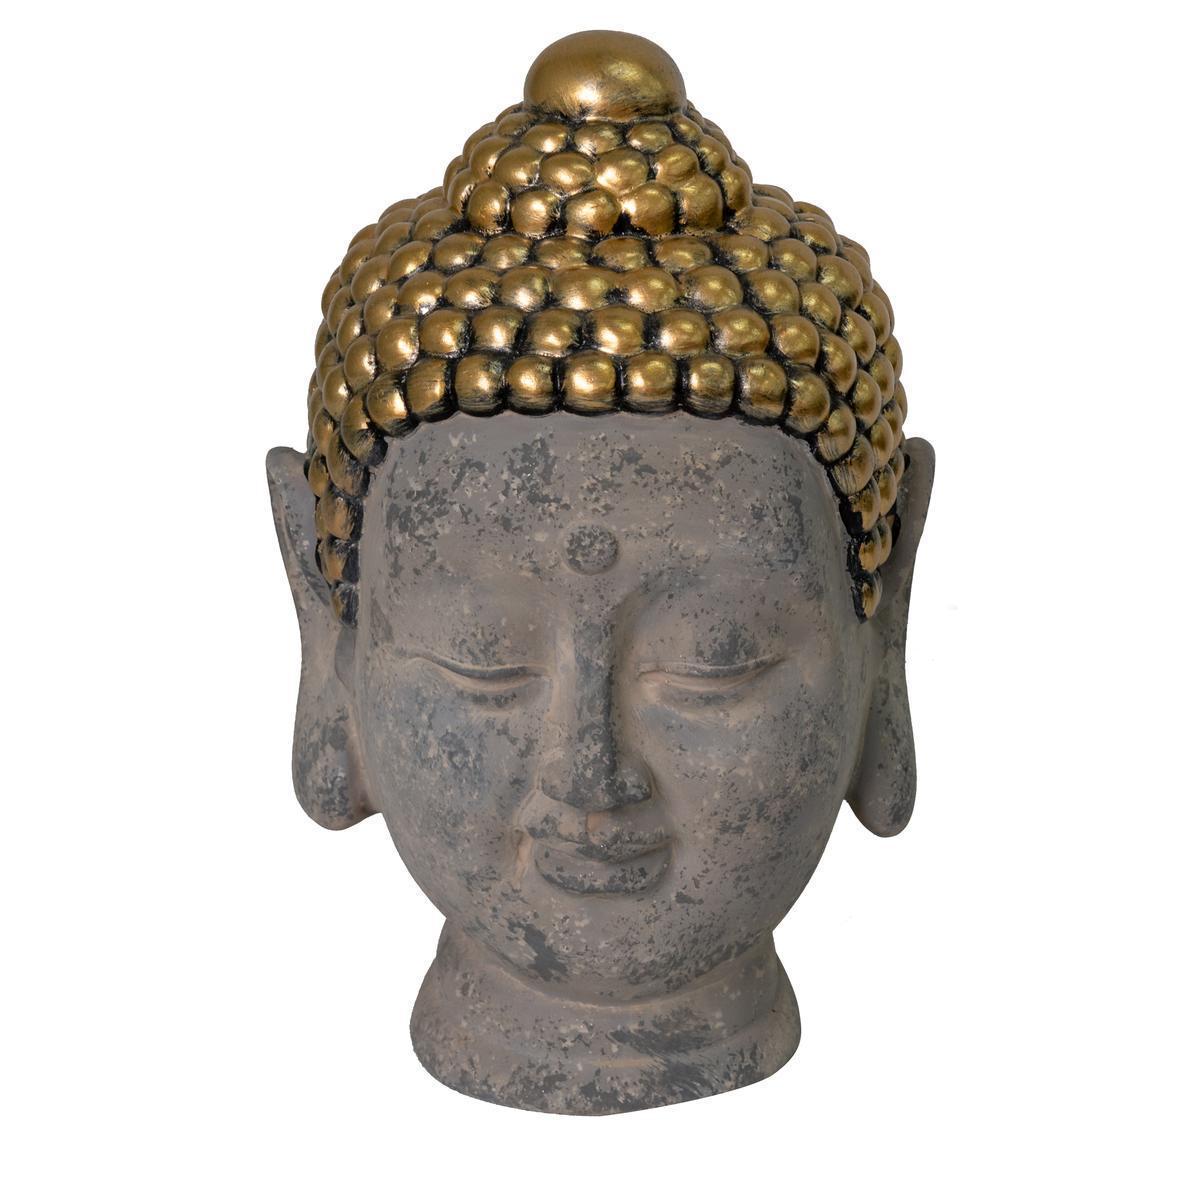 Bouddha solaire - 15 x H 23.5 x 16.5 cm - Or, gris